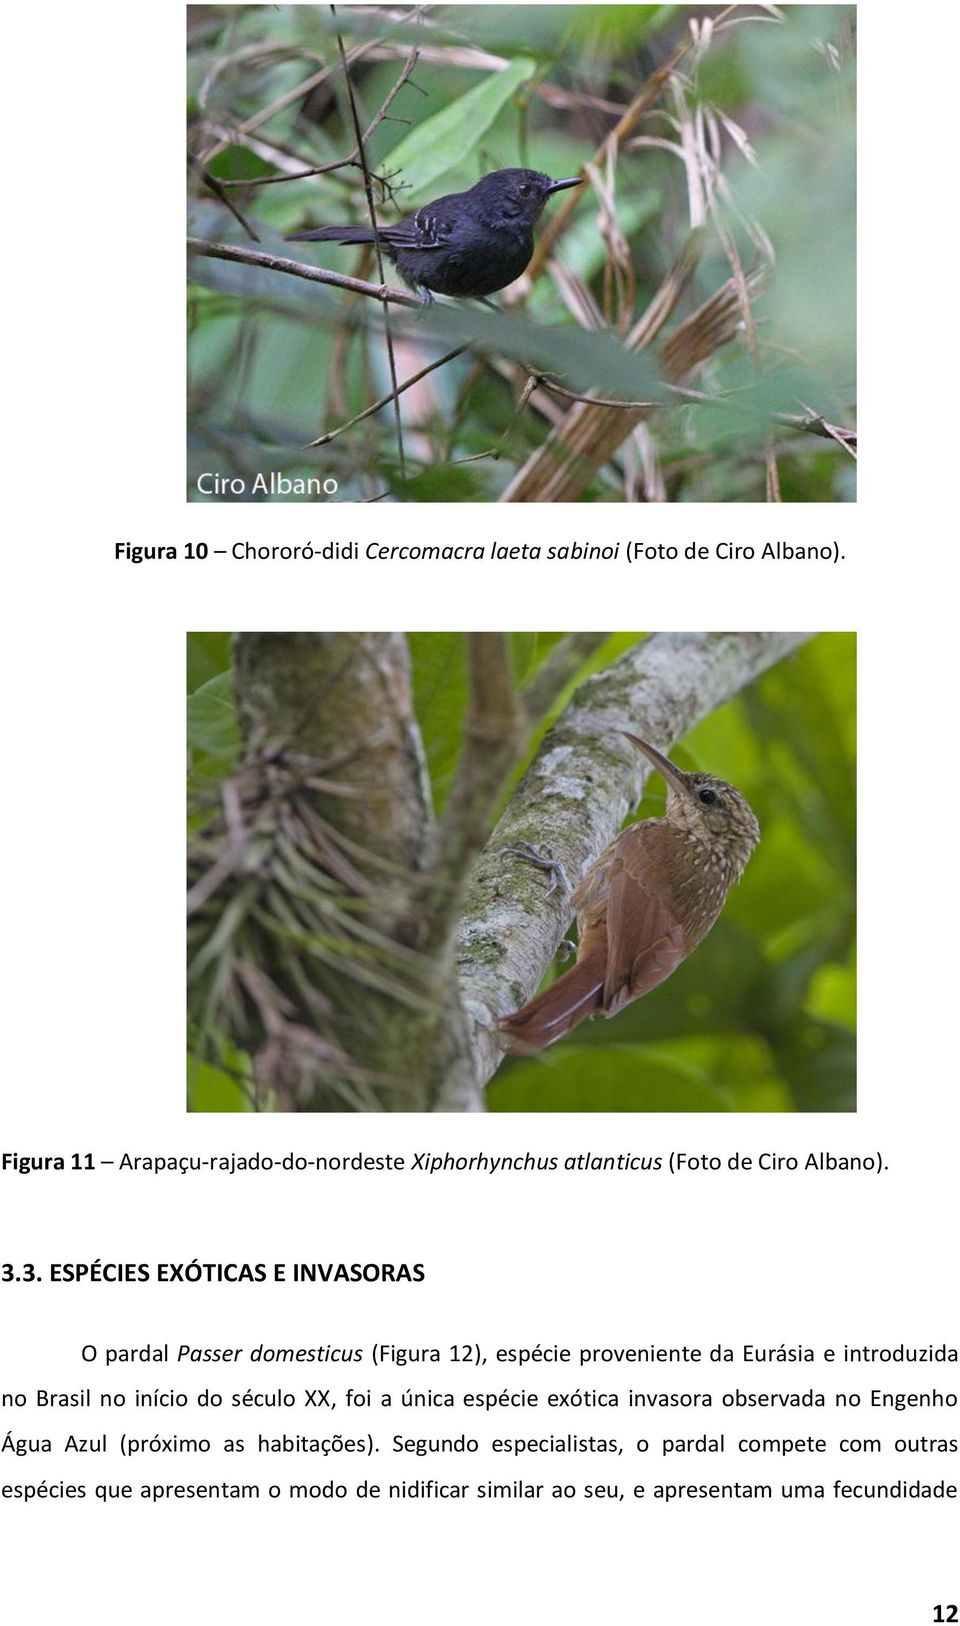 3. ESPÉCIES EXÓTICAS E INVASORAS O pardal Passer domesticus (Figura 12), espécie proveniente da Eurásia e introduzida no Brasil no